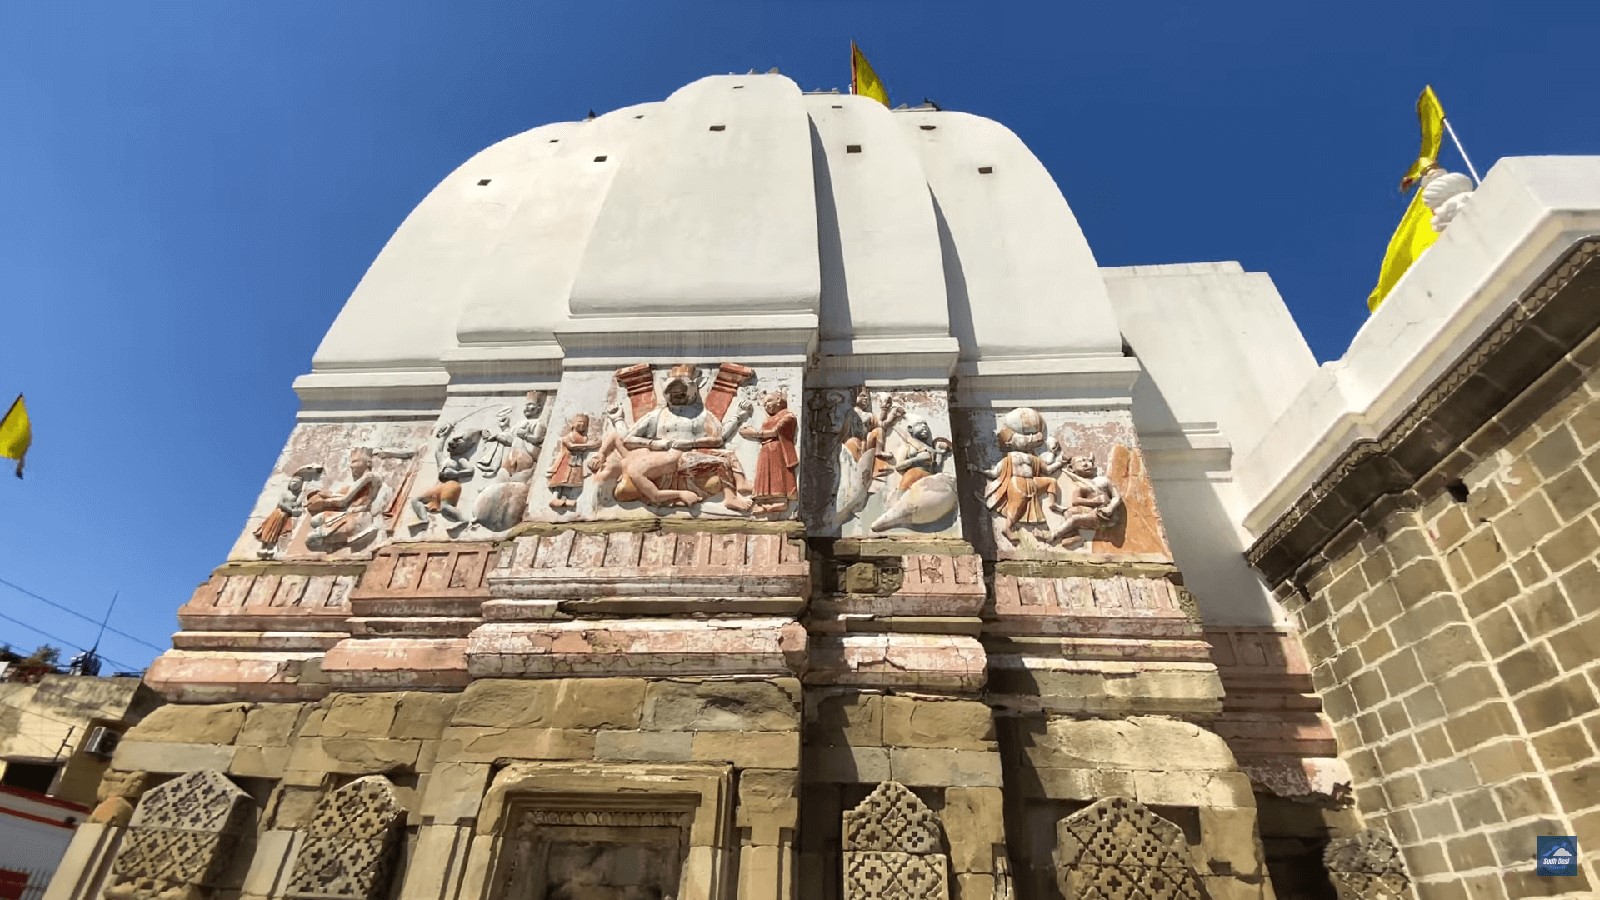 Bharat Mandir Rishikesh  (भरत मंदिर)